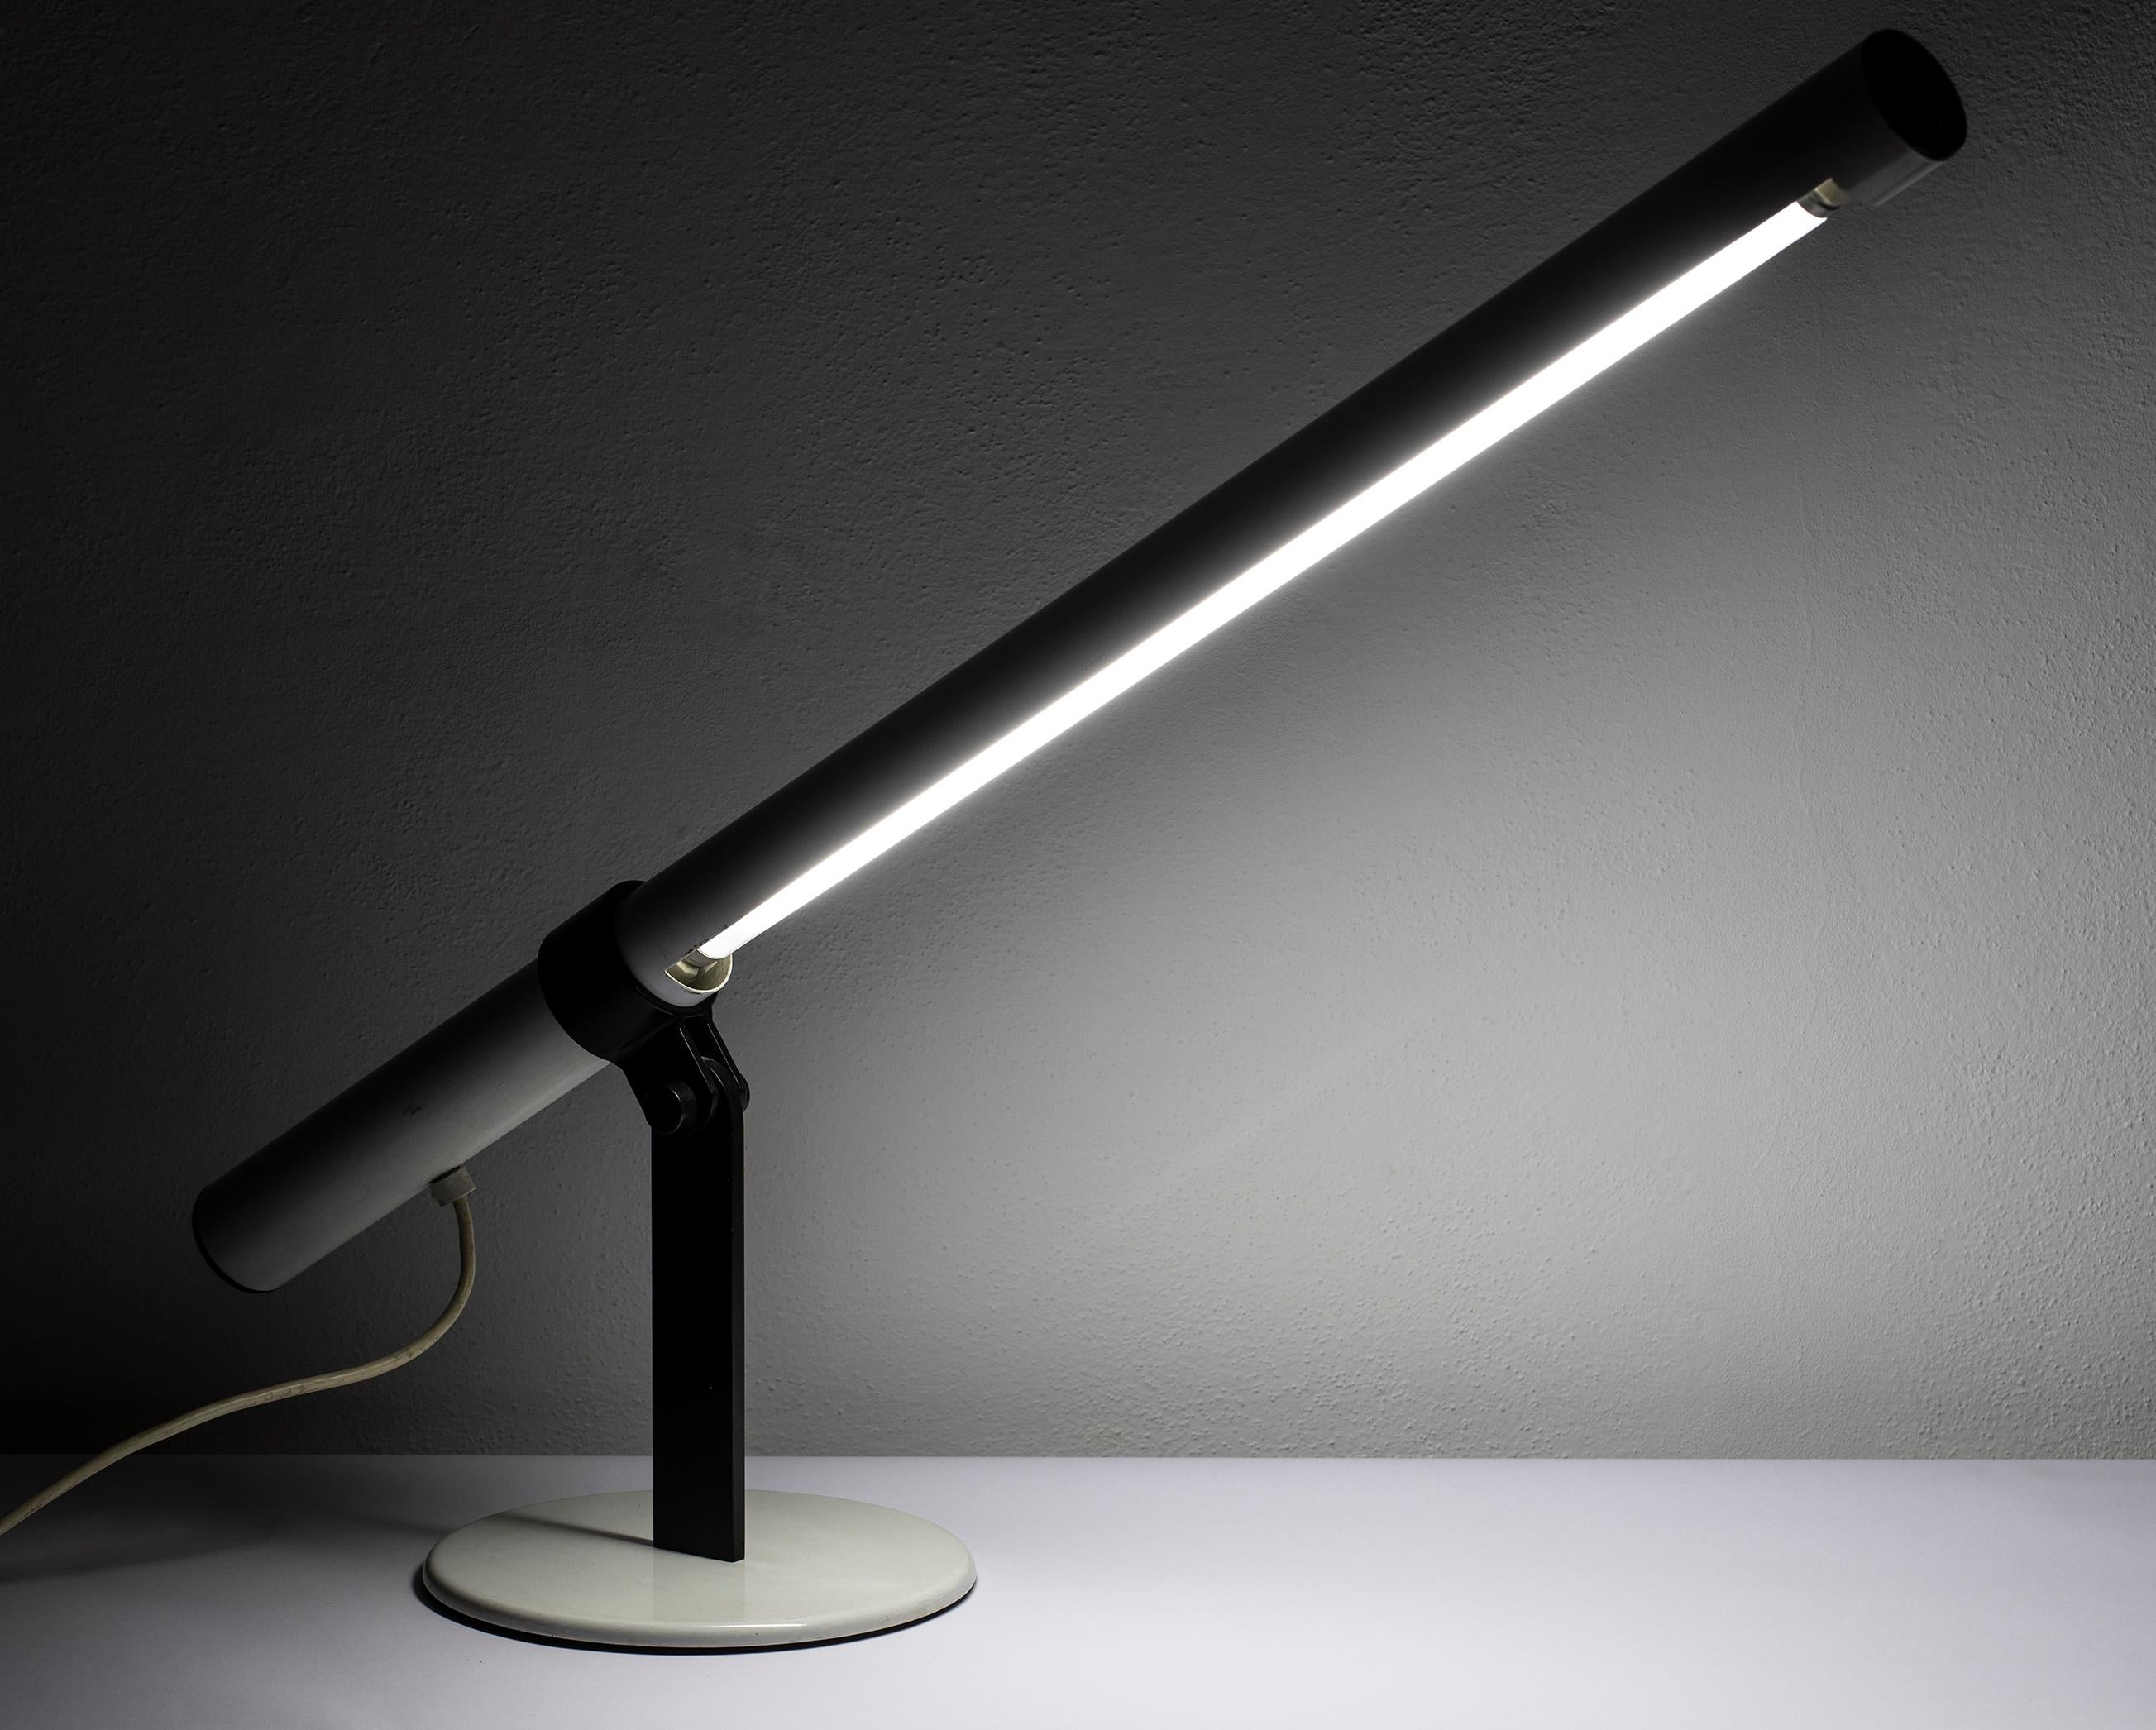 Lampe au néon particulière, produite en Italie dans les années 1970. Elle est composée d'un châssis en métal laqué blanc contenant un tube néon, la structure est inclinable et réglable et repose sur un socle en métal laqué noir. Il présente quelques